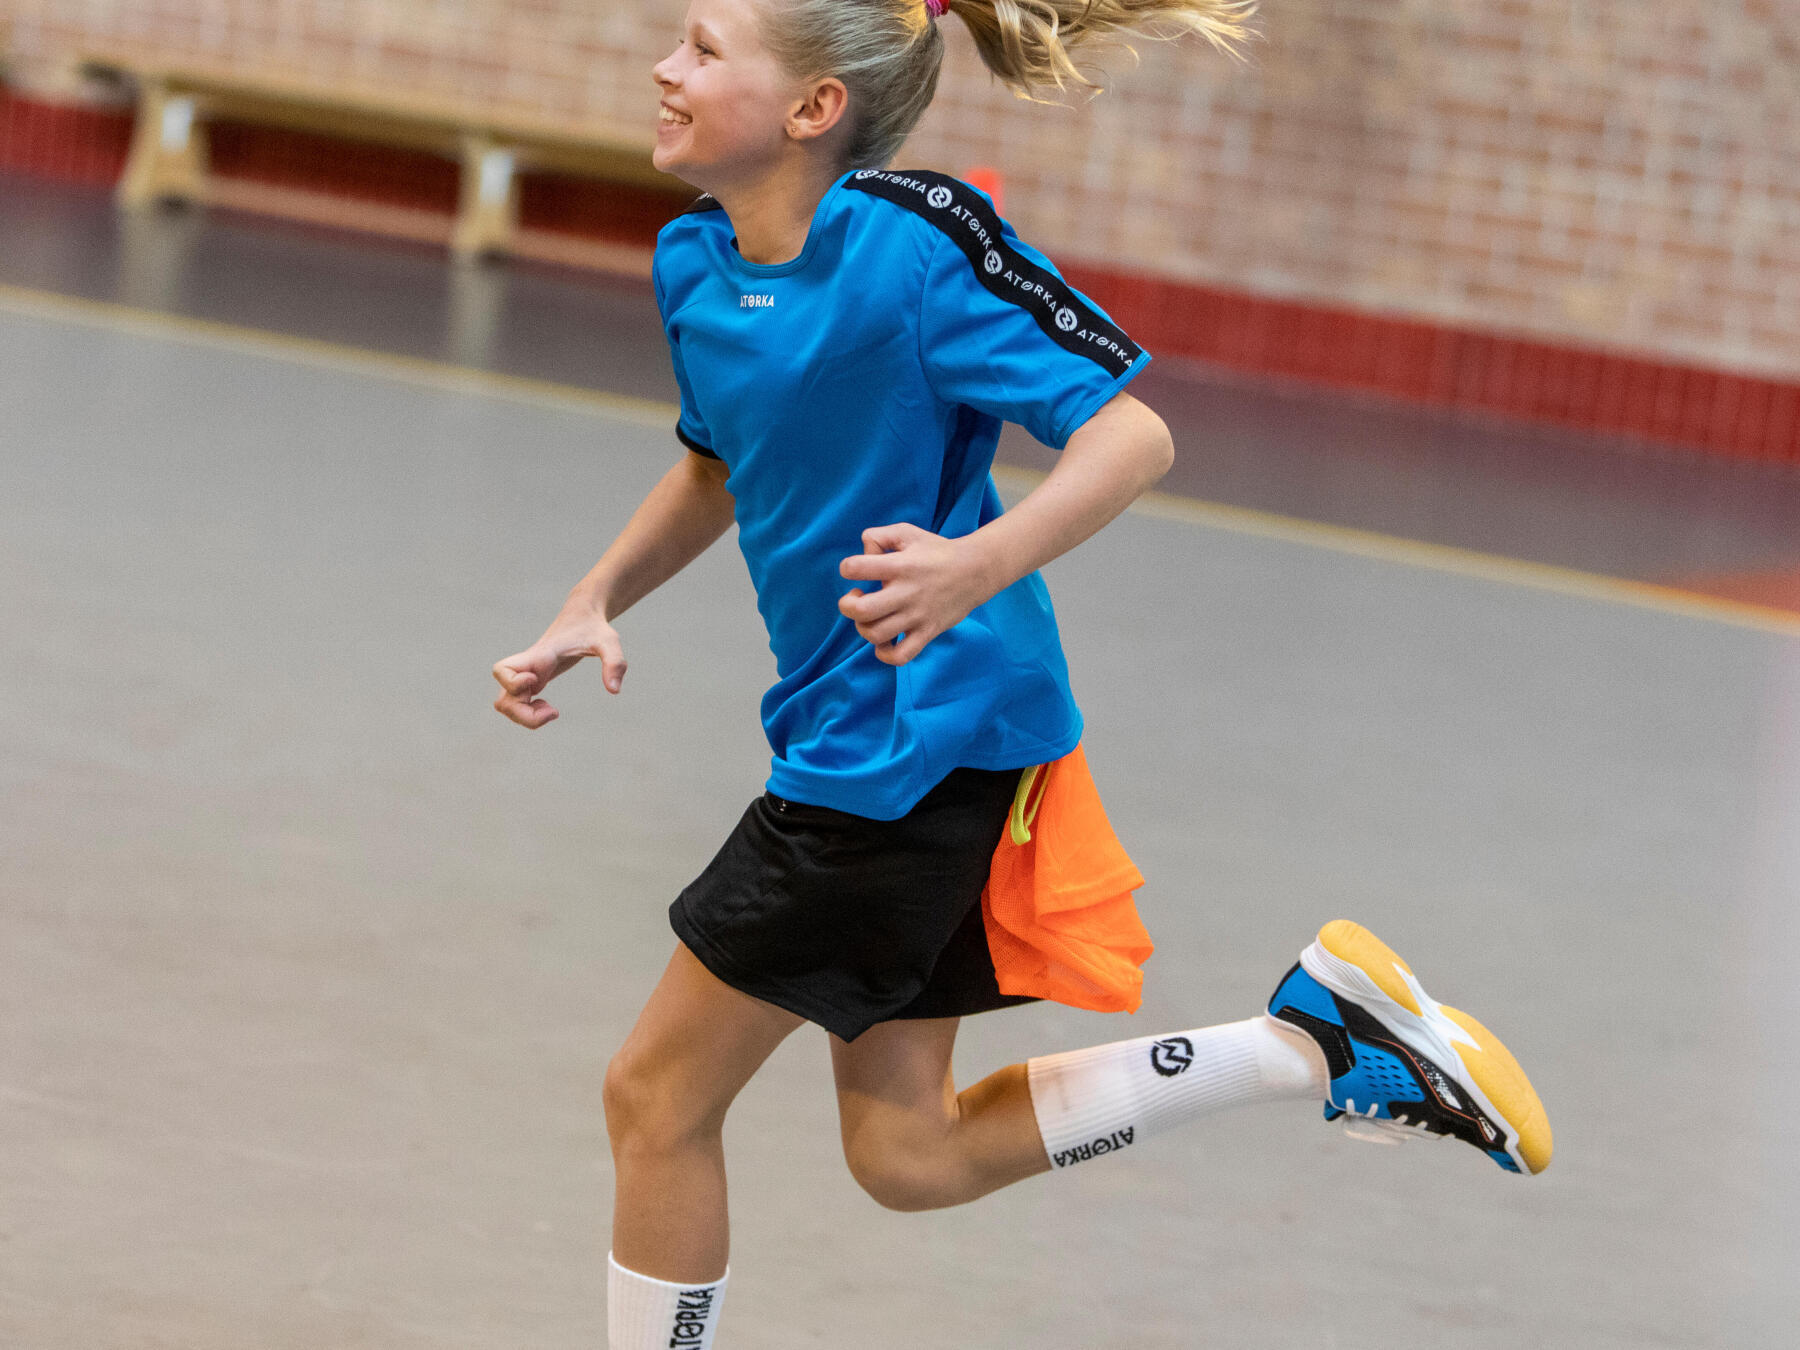 Pourquoi mettre mon enfant à un sport collectif comme le Handball ?